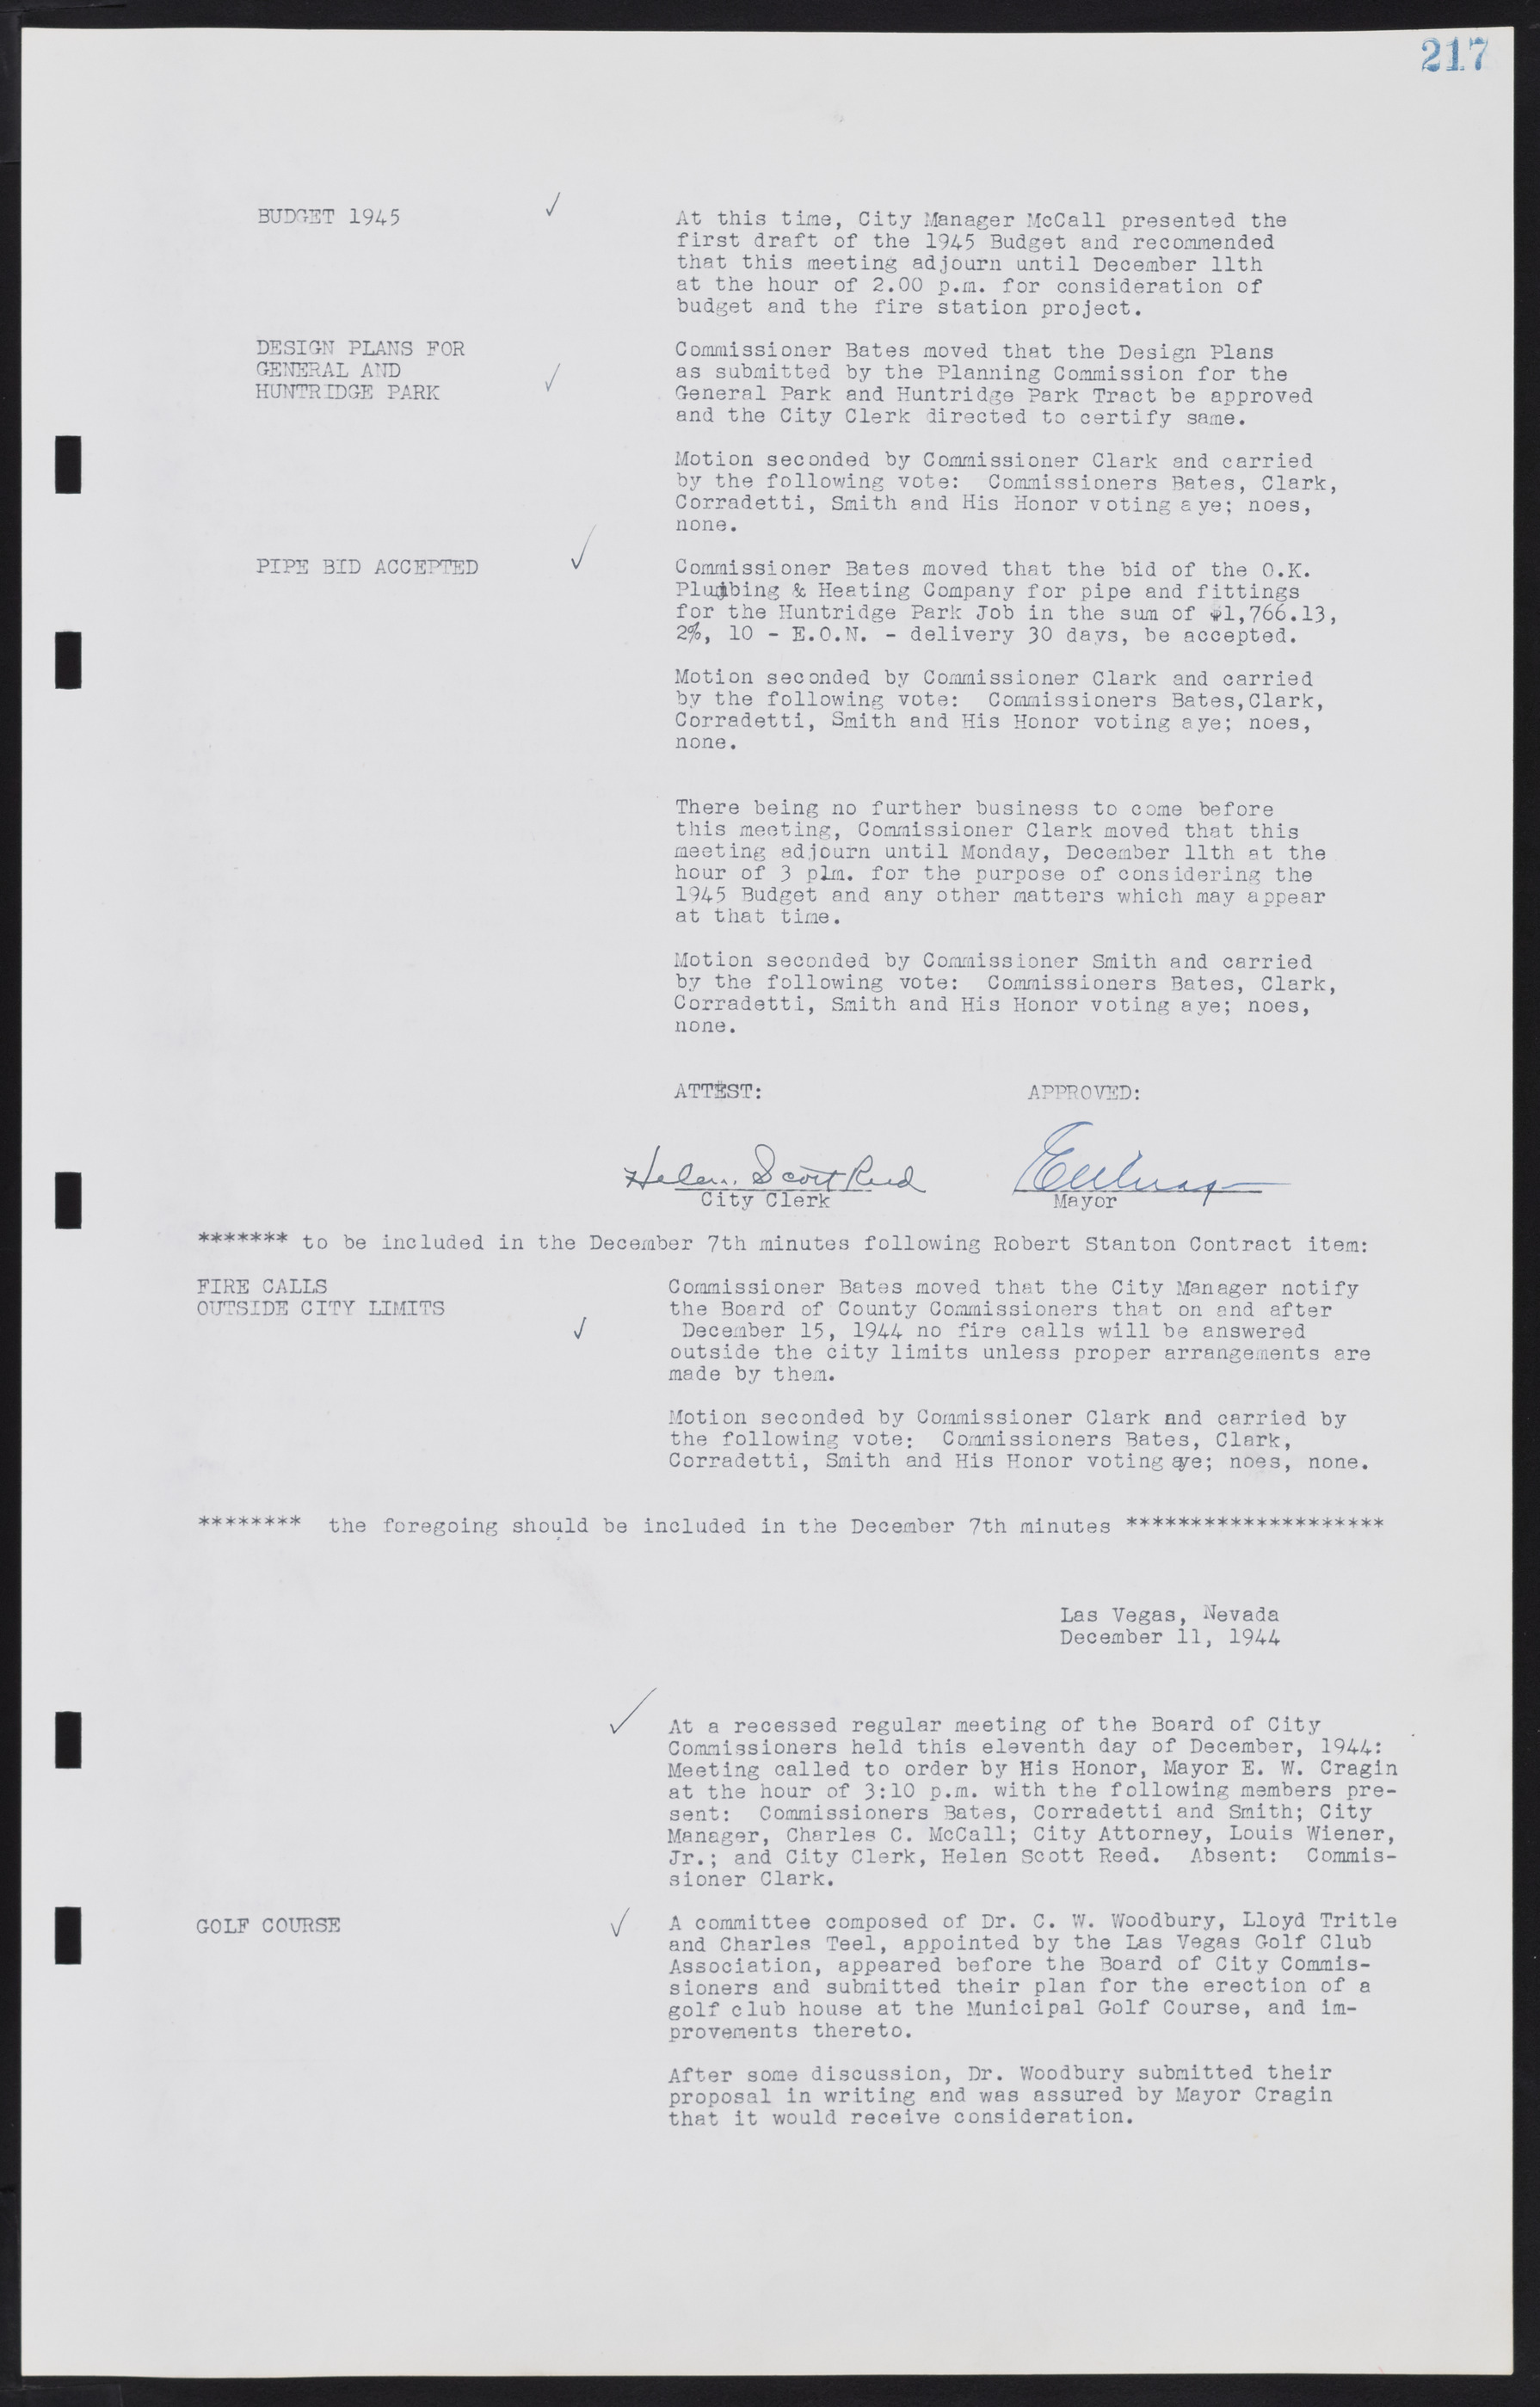 Las Vegas City Commission Minutes, August 11, 1942 to December 30, 1946, lvc000005-237